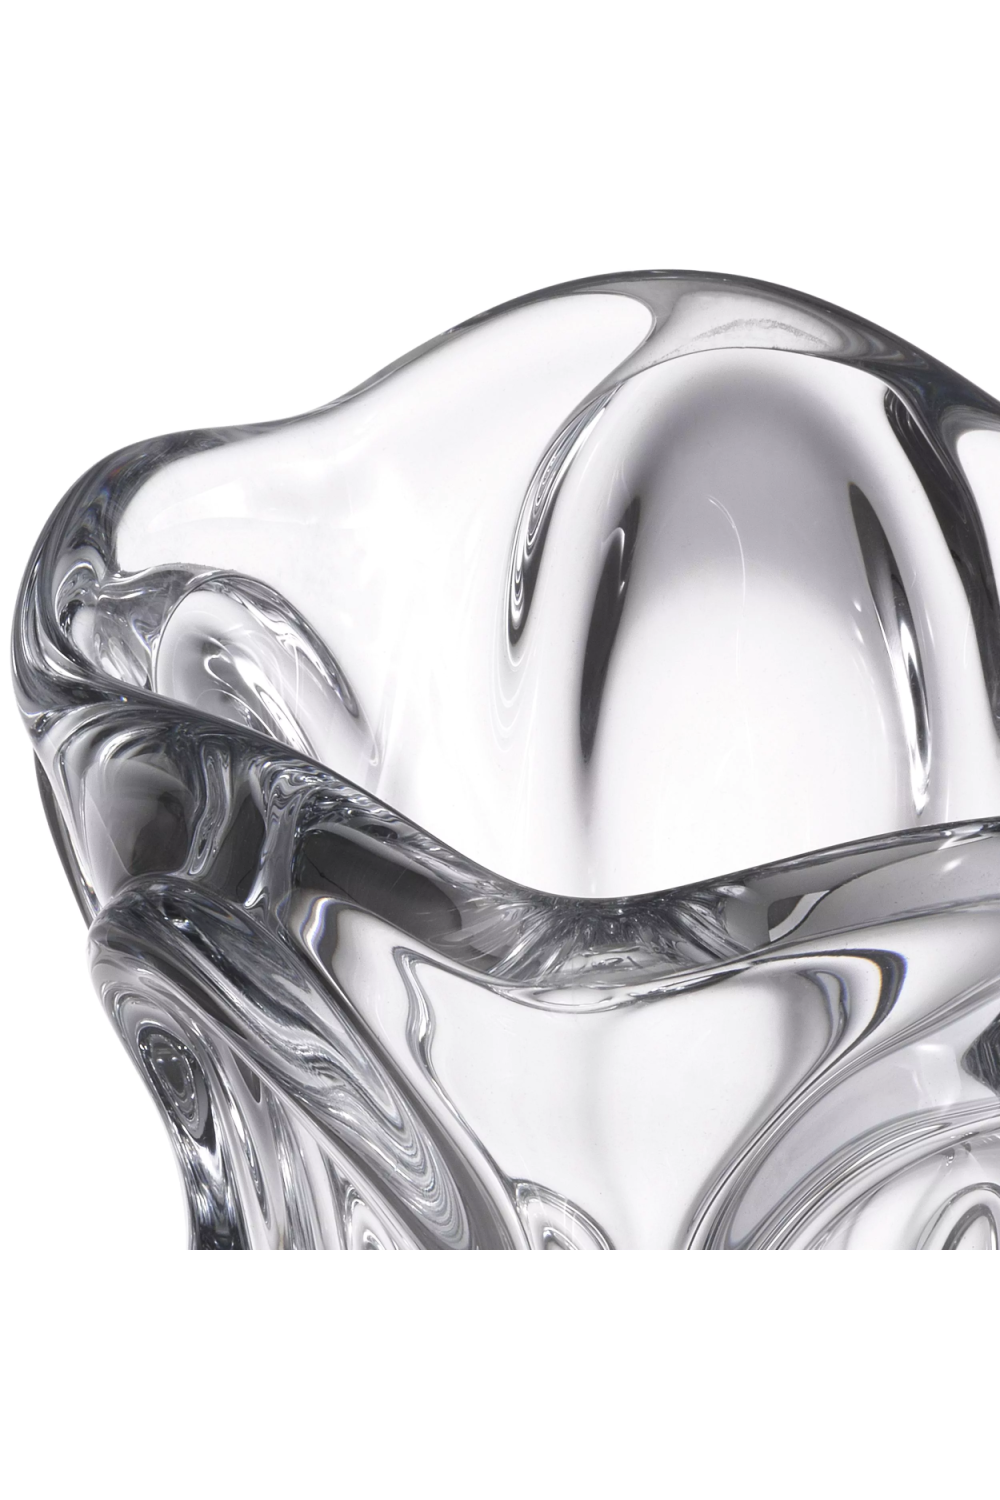 Contemporary Glass Vase S | Eichholtz Aila | OROA.com